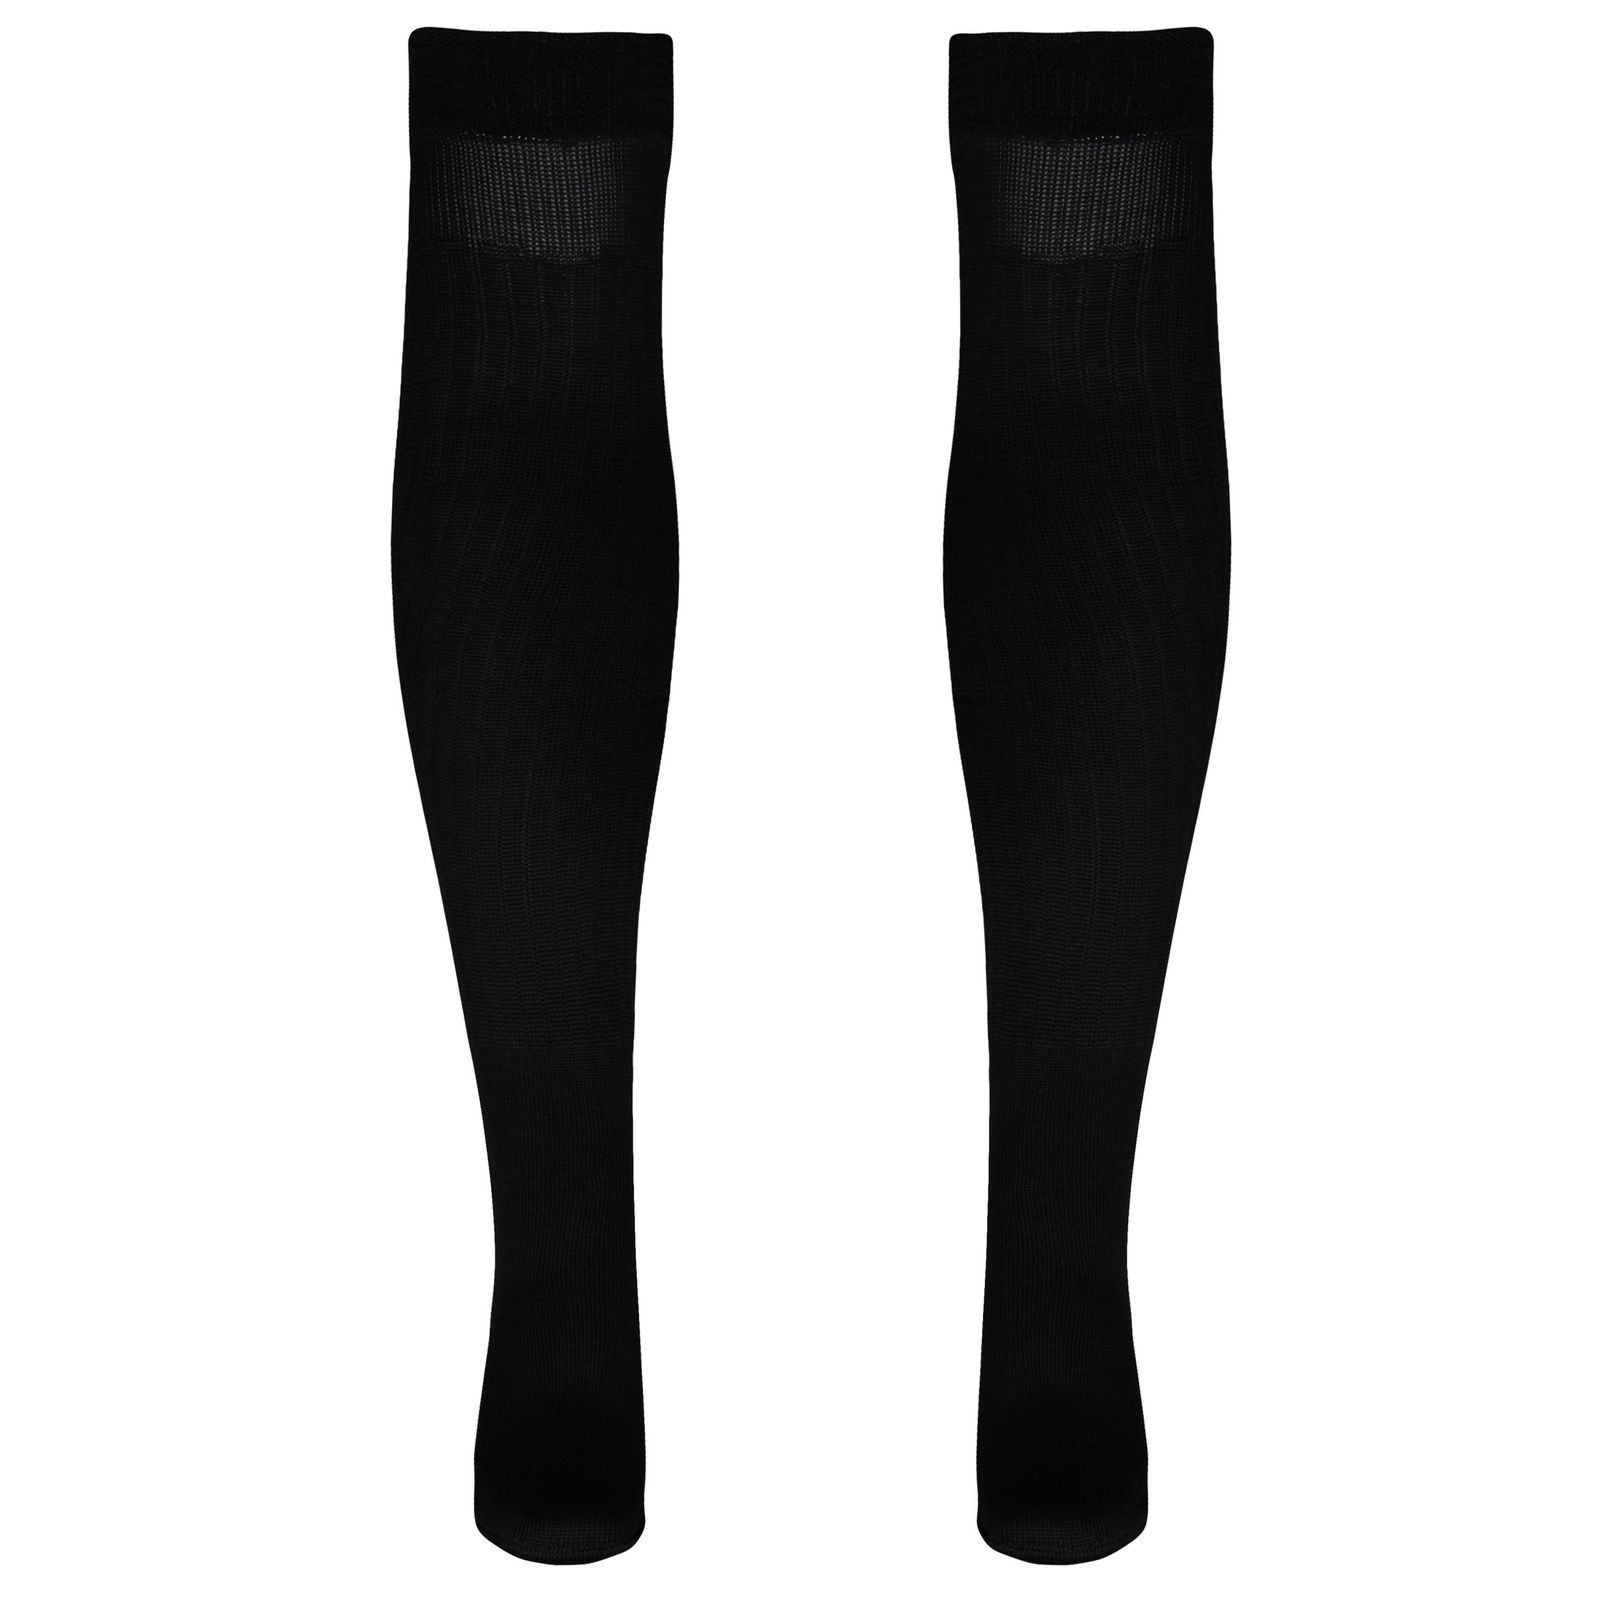 جوراب ورزشی ساق بلند مردانه ماییلدا مدل 4185 رنگ مشکی -  - 1